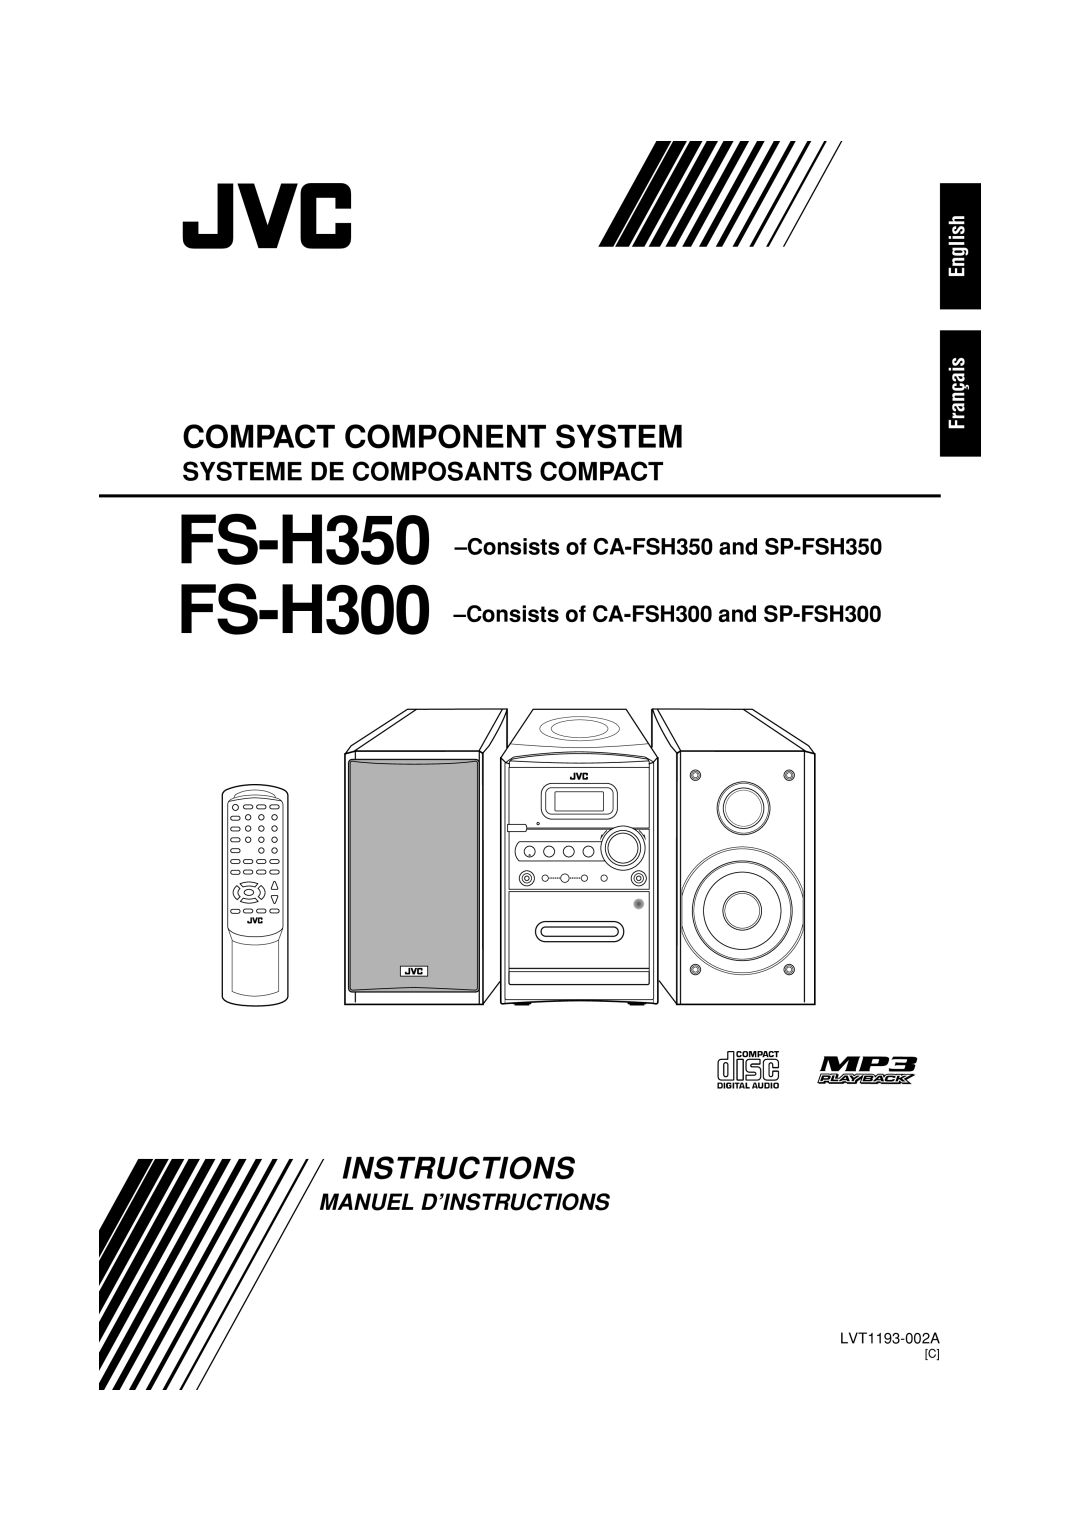 JVC Manuel D’Instructions, English Français, FS-H350 FS-H300, Compact Component System, Systeme De Composants Compact 